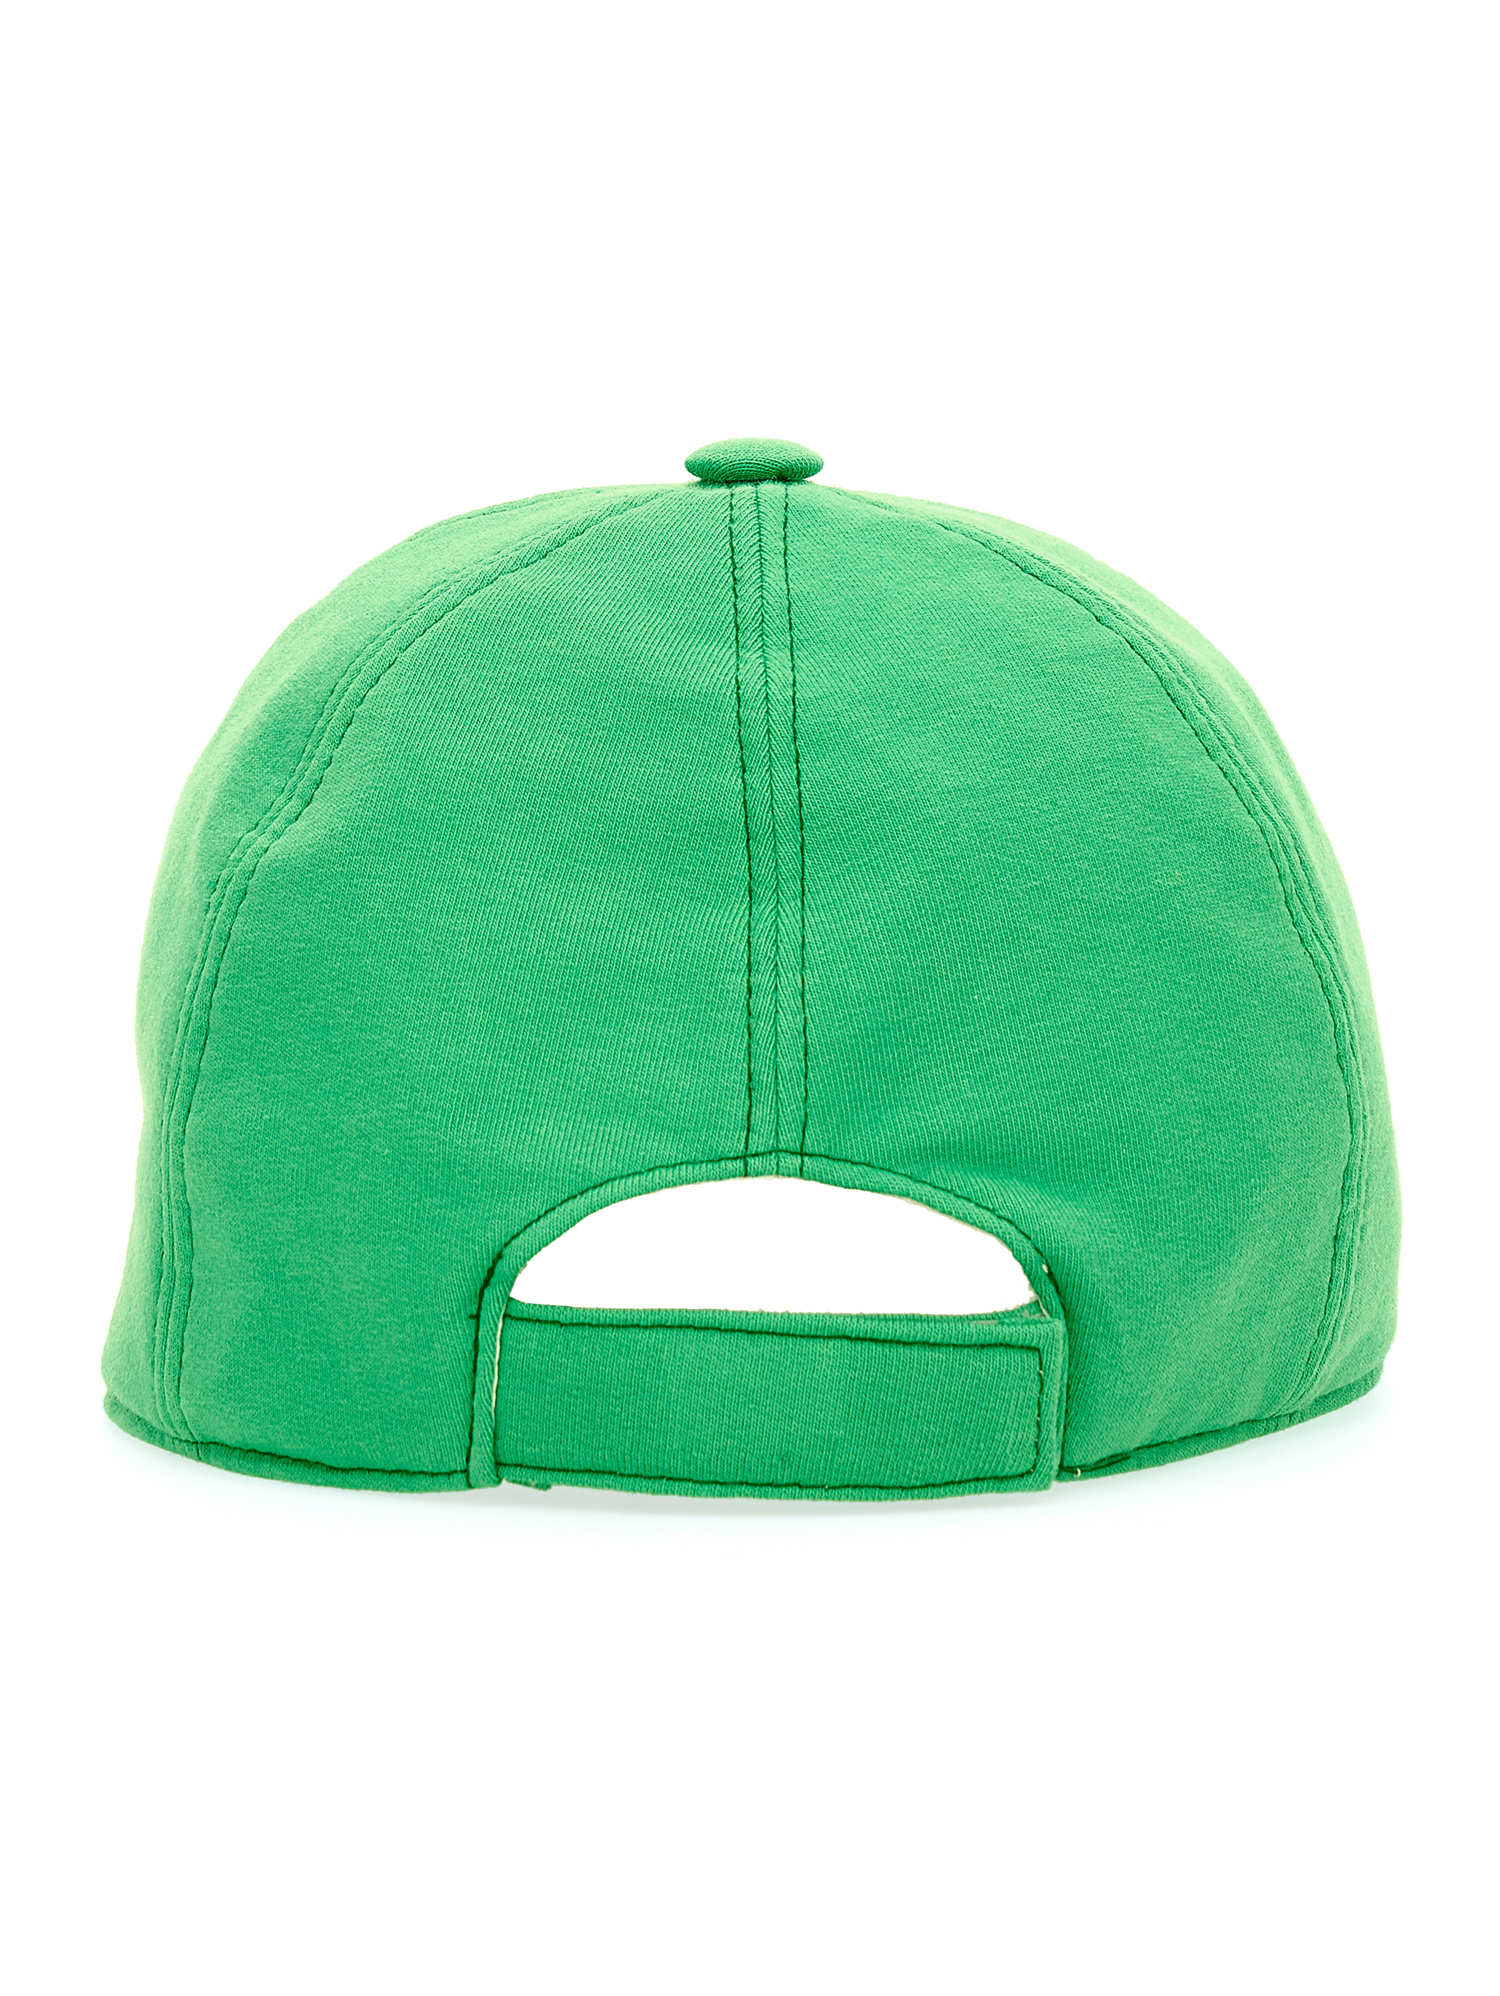 Shop Chiara Ferragni Cf Ferragni Stretch Baseball Cap In Bright Green